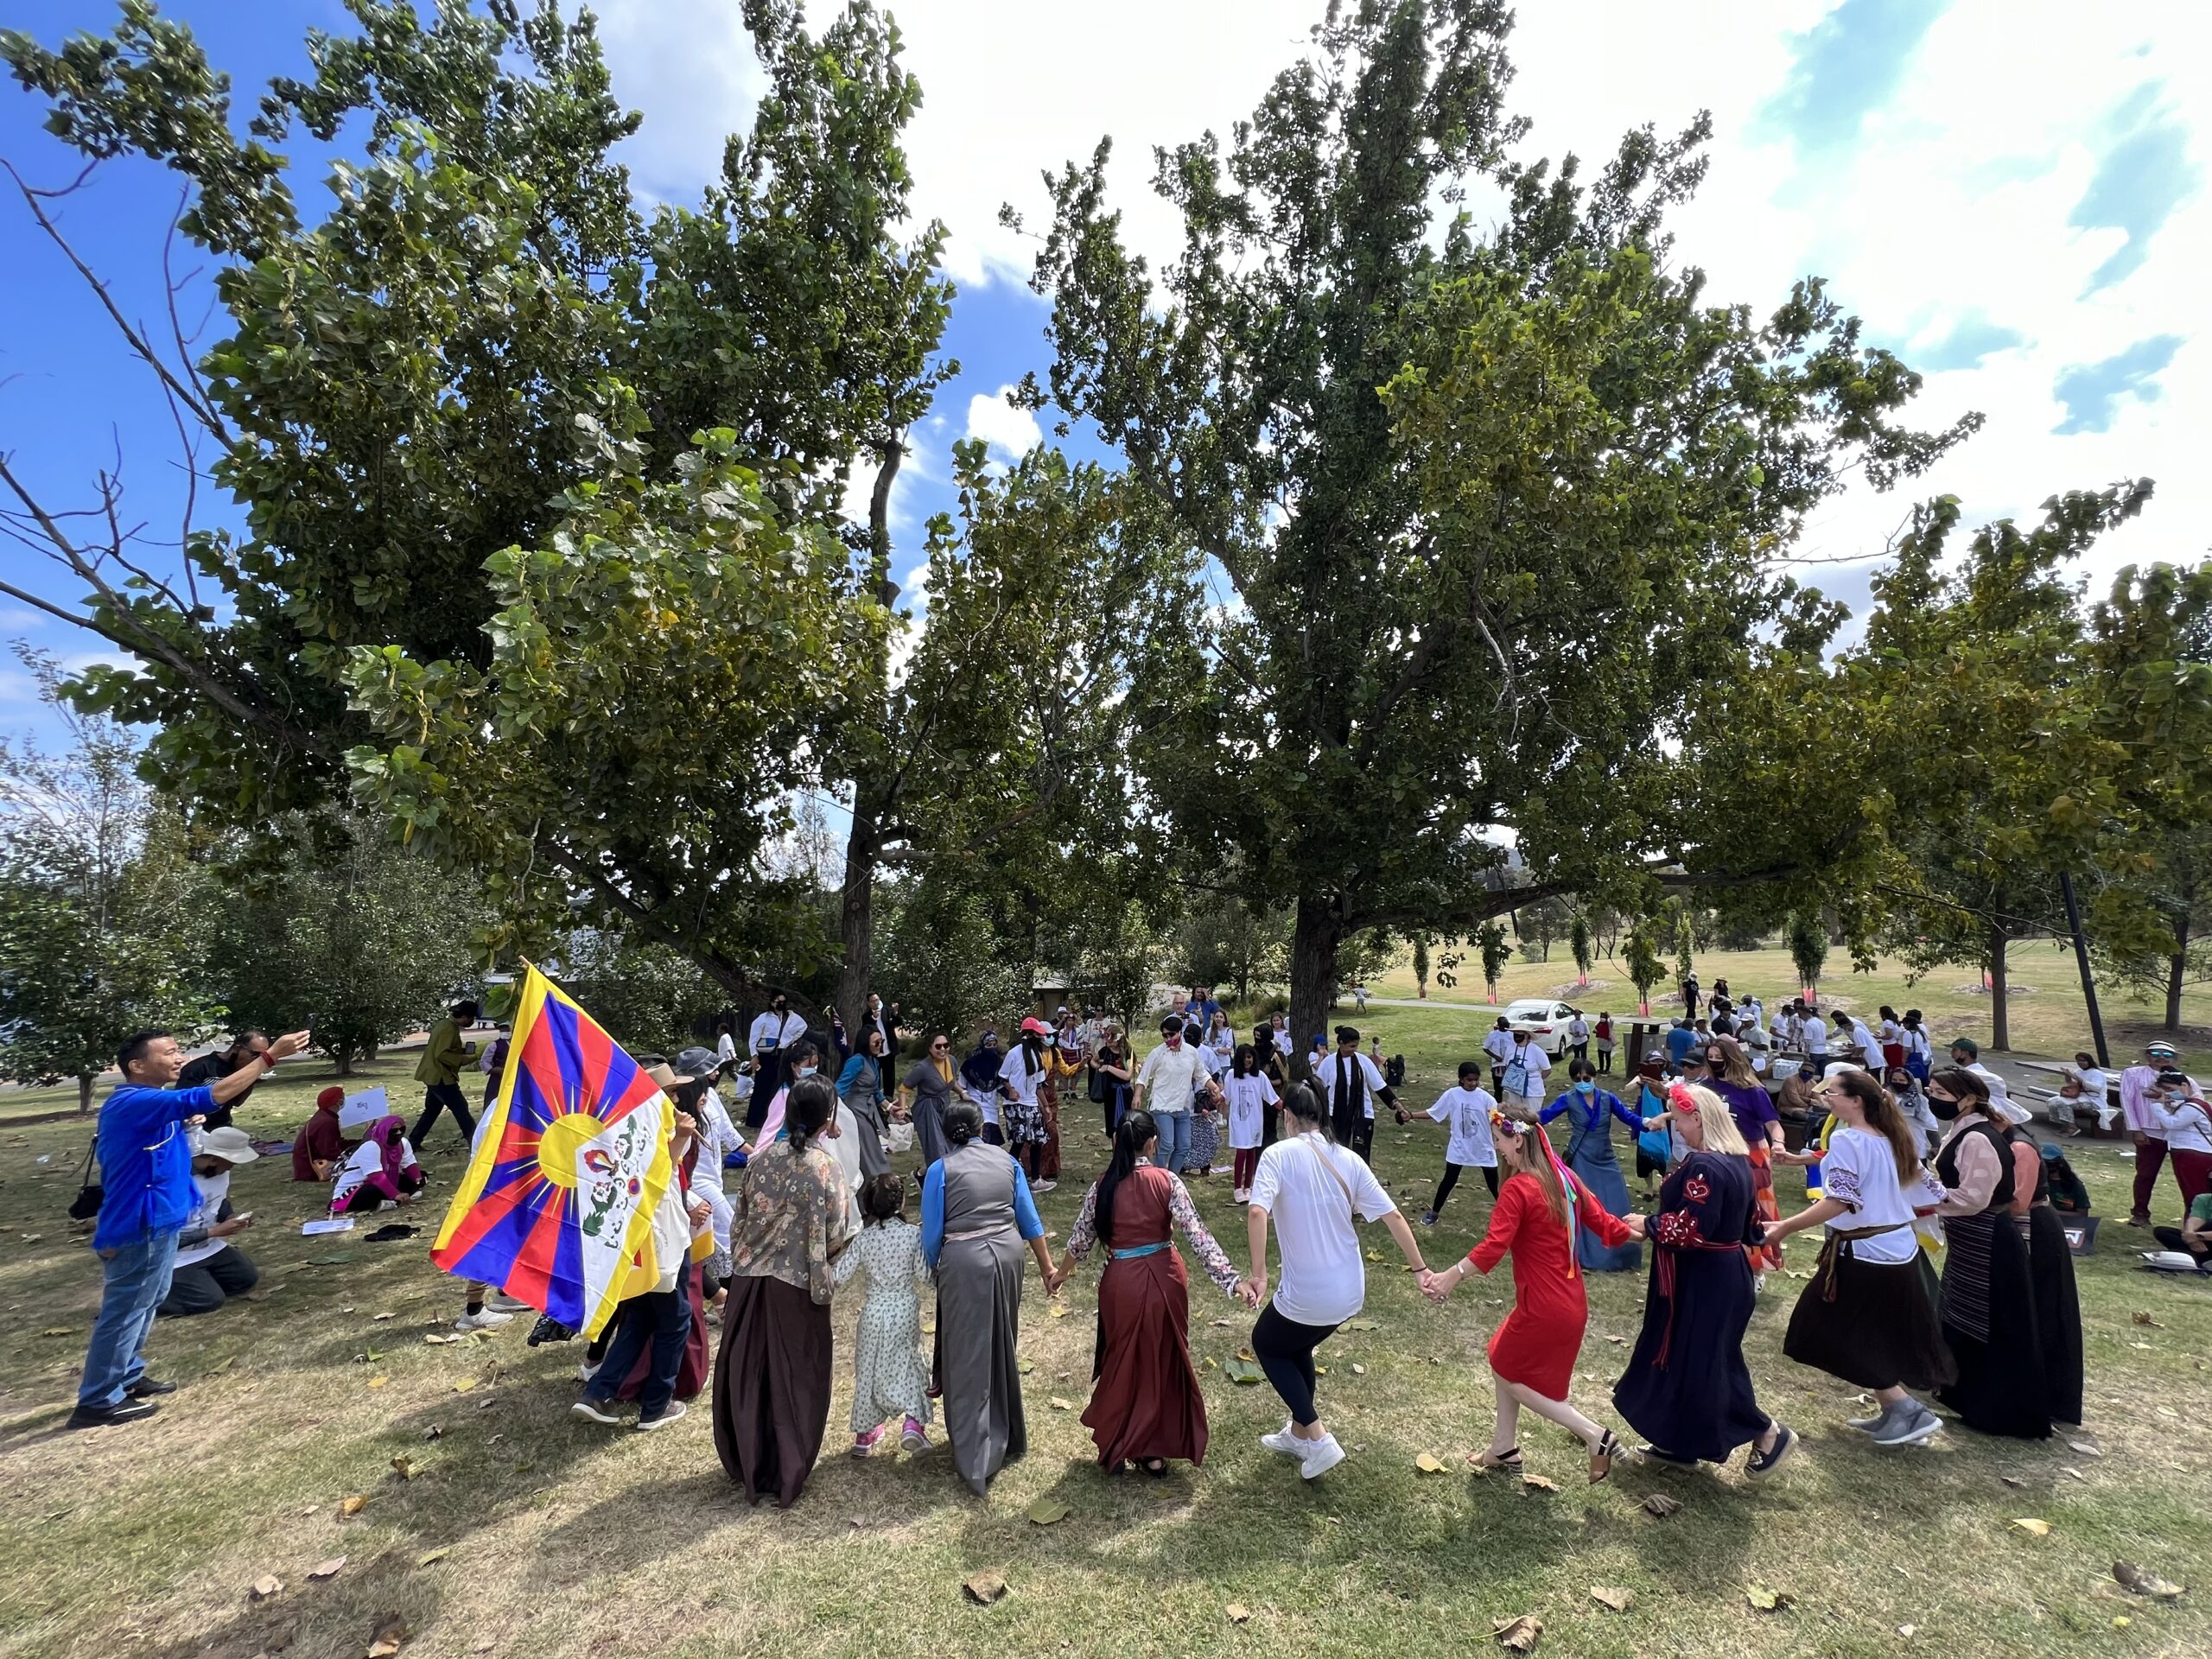 Miembros de la comunidad tibetana interpretando la danza del Círculo Tibetano Gorshey en el Día Internacional de la Lengua Materna en Canberra escalaron 1 tibetano de Canberra representando su idioma en la Caminata del Día Internacional de la Lengua Materna en Australia